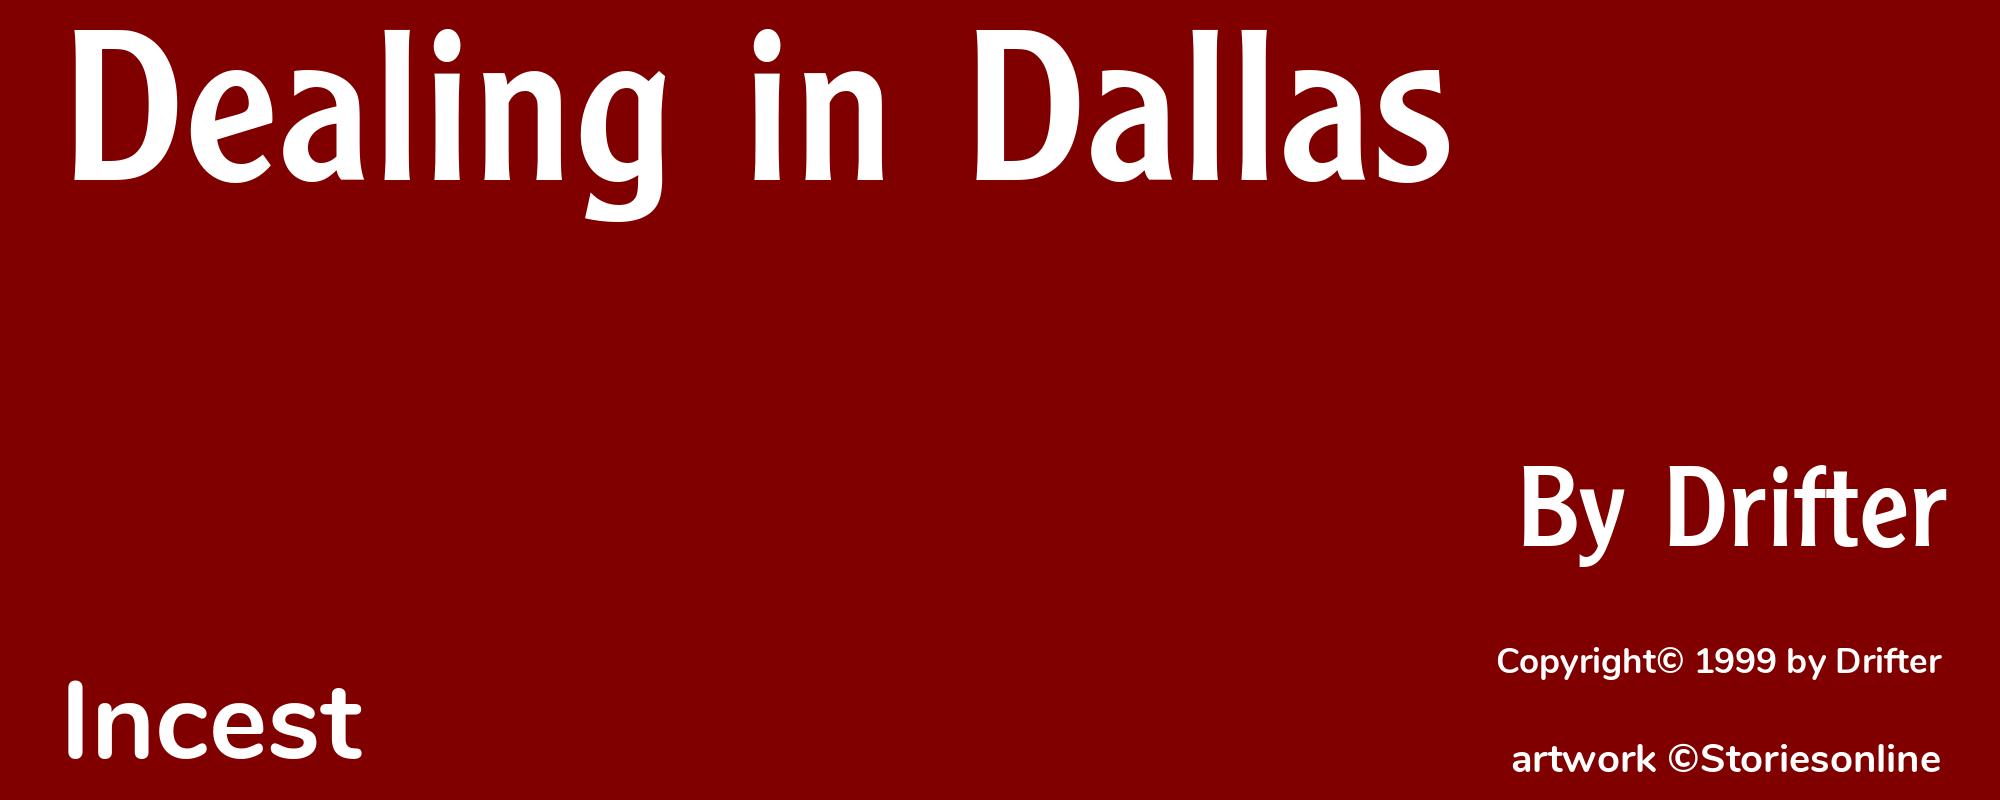 Dealing in Dallas - Cover